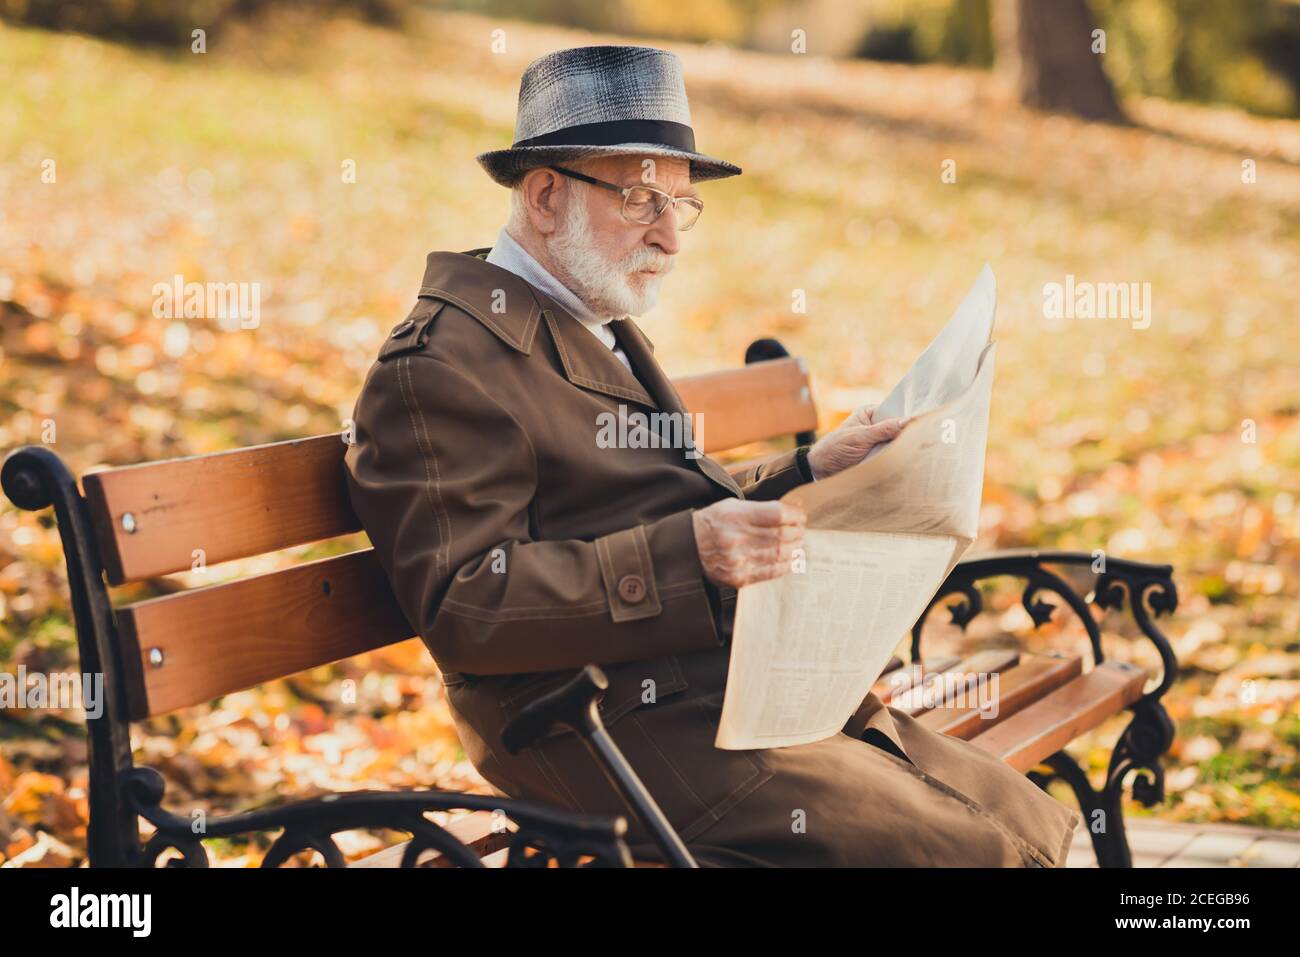 Profil Seitenfoto von seriösen alten Mann englischen Gentleman haben Herbst Park Rest entspannen sitzen Bank lesen Zeitung tragen Mütze Saison Stockfoto